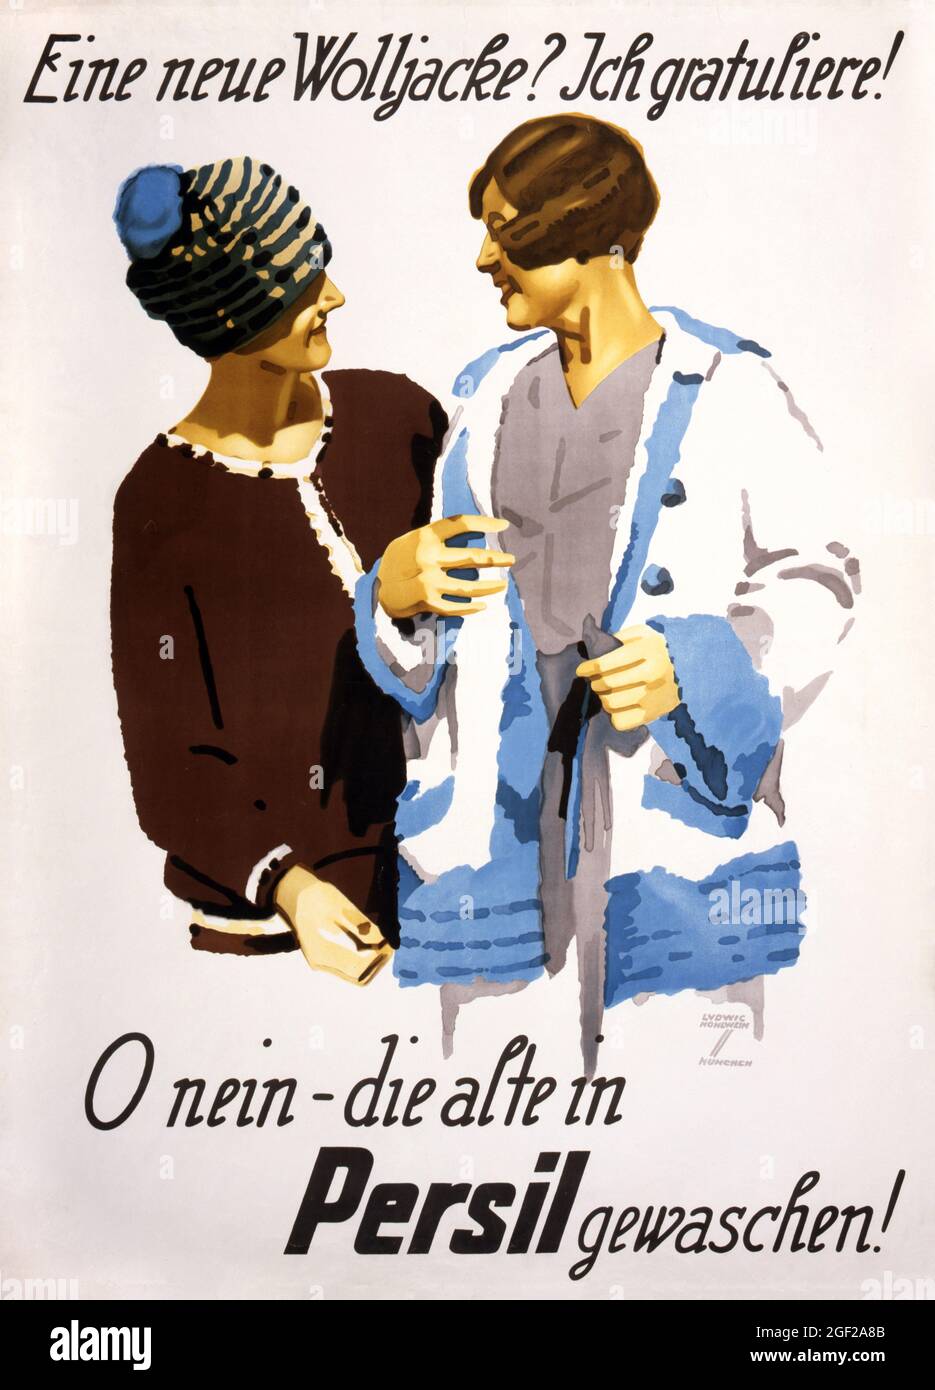 Eine neue Wolljacke? Ich gratuliere! O nein - die alte in Persil gewaschen! by Ludwig Hohlwein (1874-1949). Restored vintage poster published in 1920 in Germany. Stock Photo